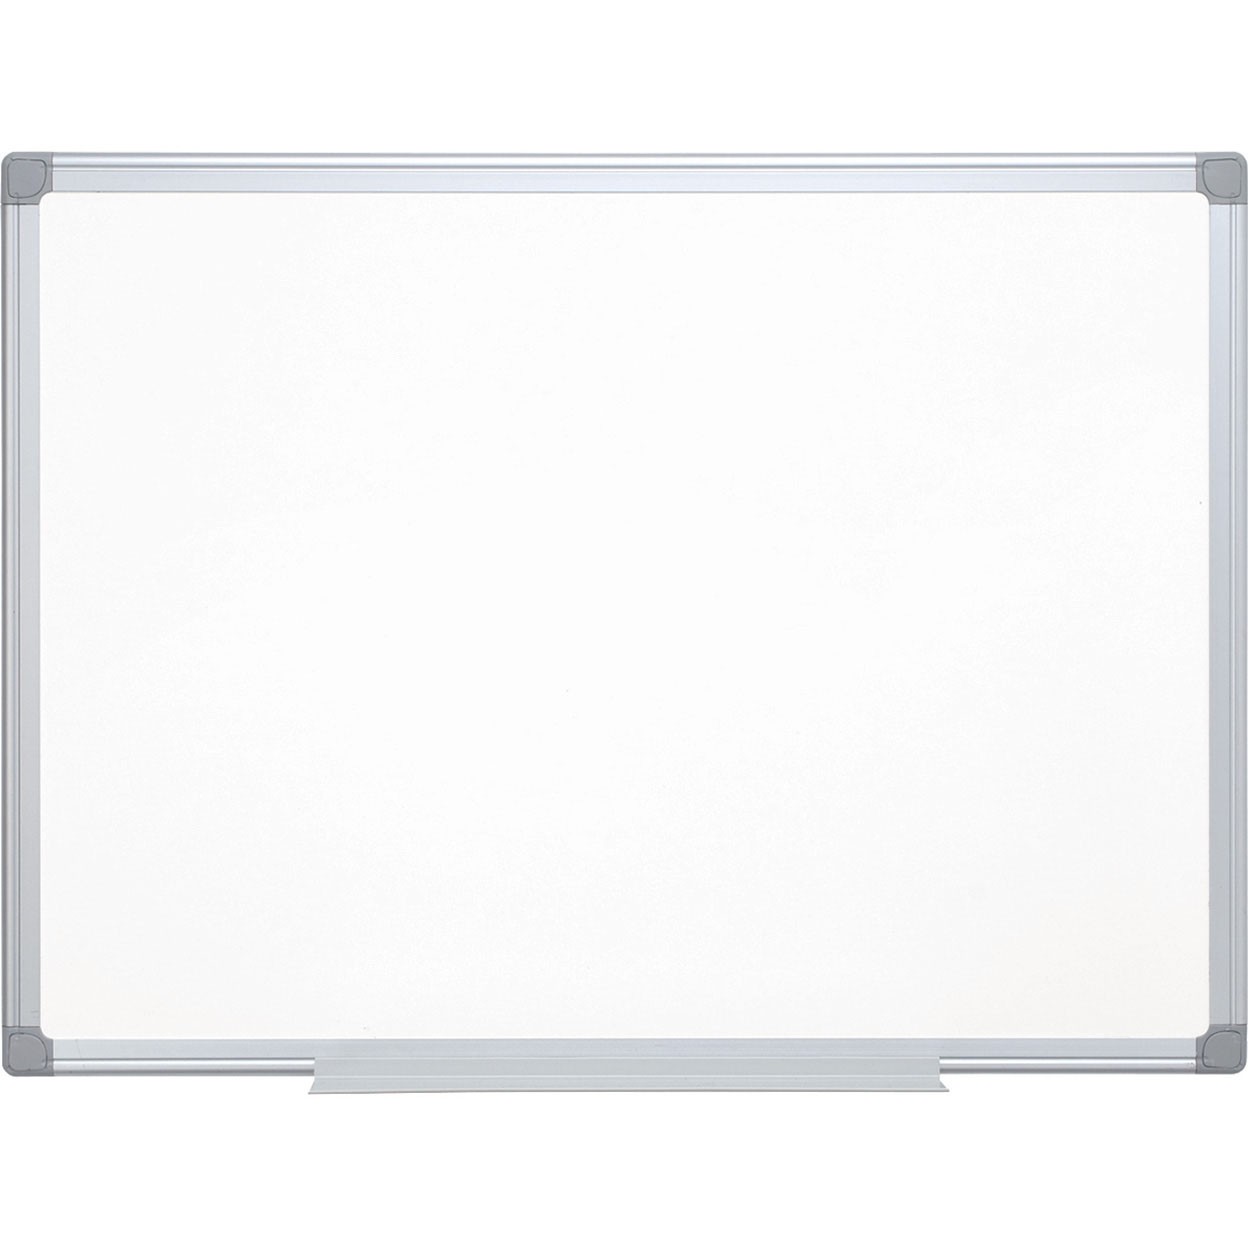 Q-connect lakeret whiteboardtavle 90x60cm